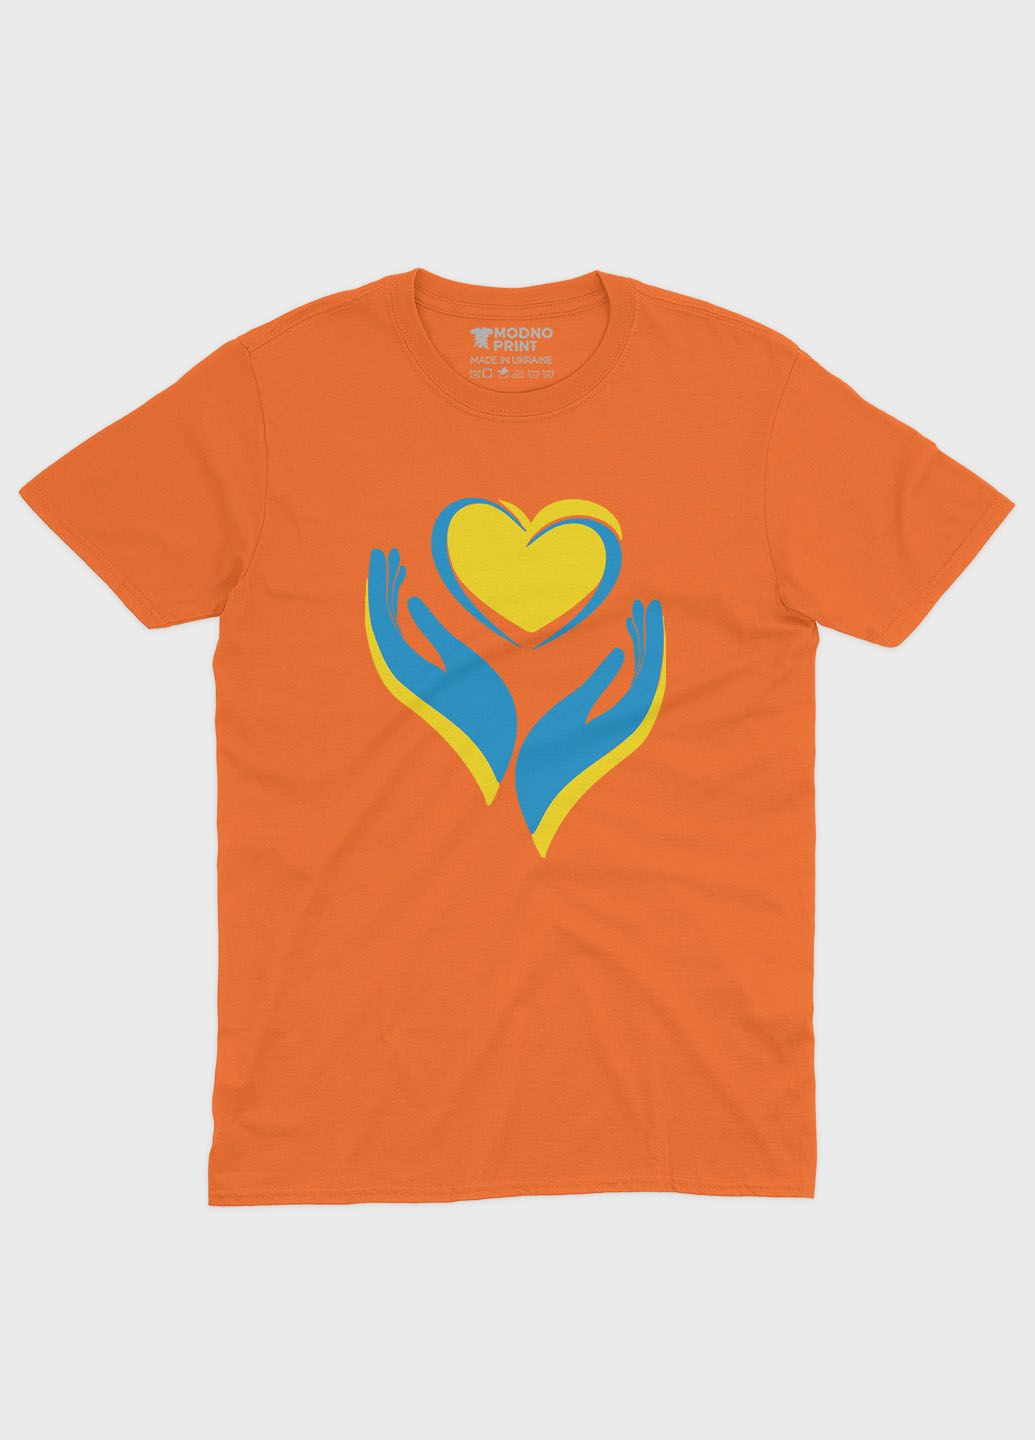 Оранжевая демисезонная футболка для мальчика с патриотическим принтом сердце и лодони (ts001-2-ora-005-1-029-b) Modno